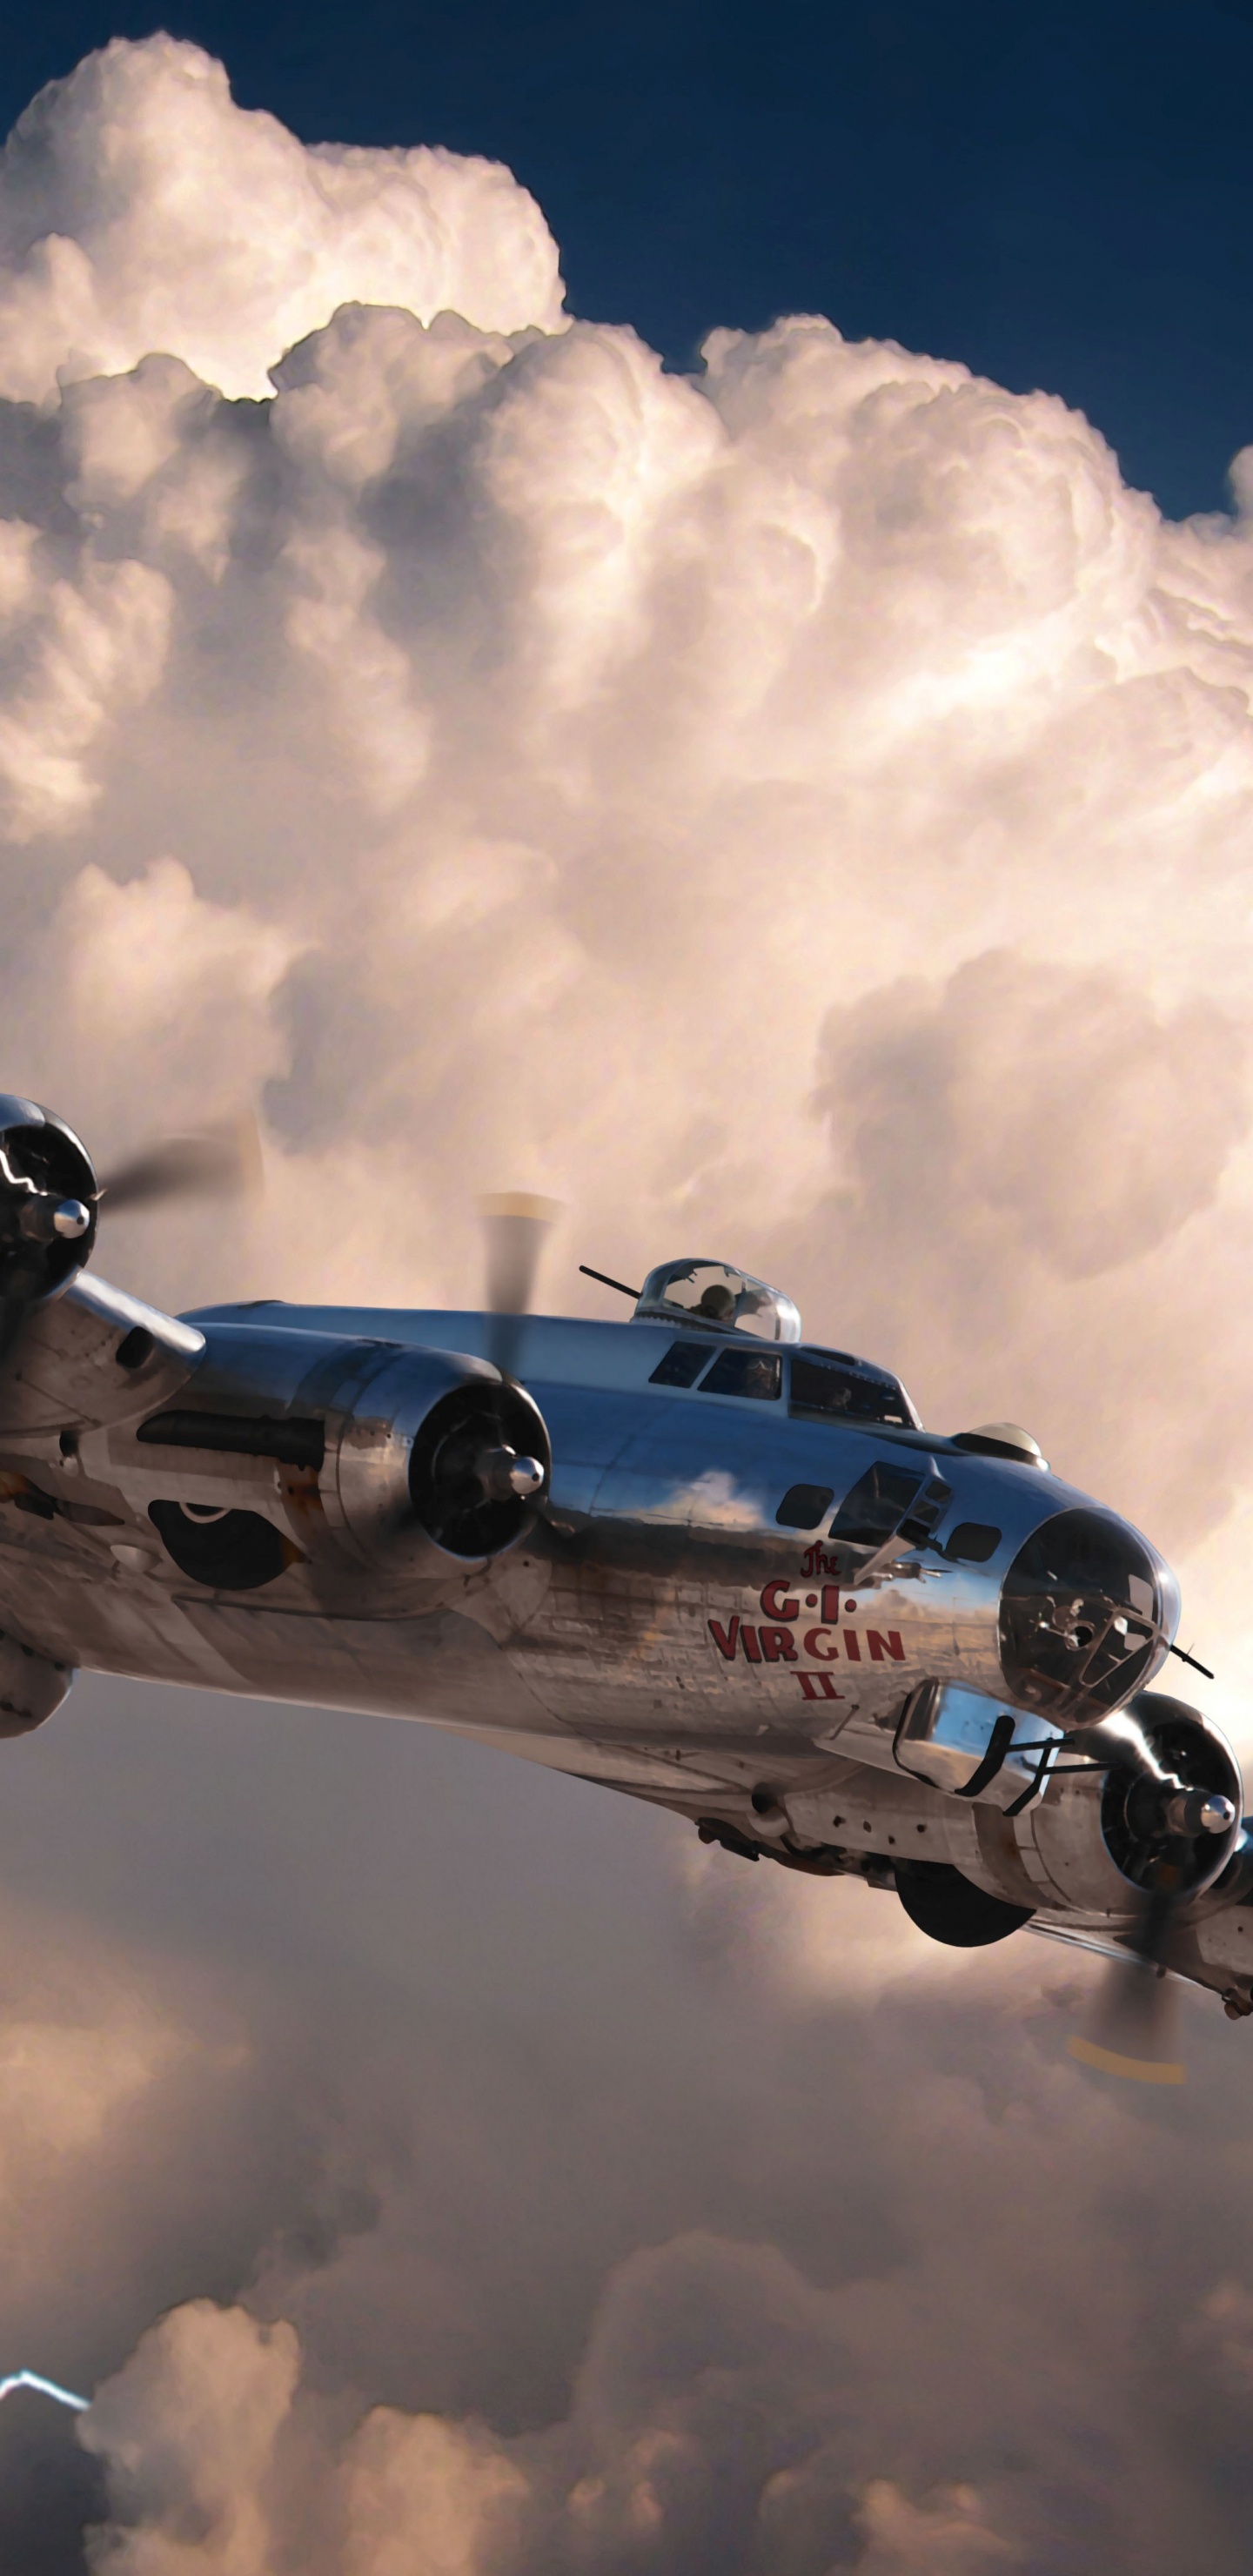 Blaues Und Weißes Flugzeug Unter Weißen Wolken Und Blauem Himmel Tagsüber. Wallpaper in 1440x2960 Resolution